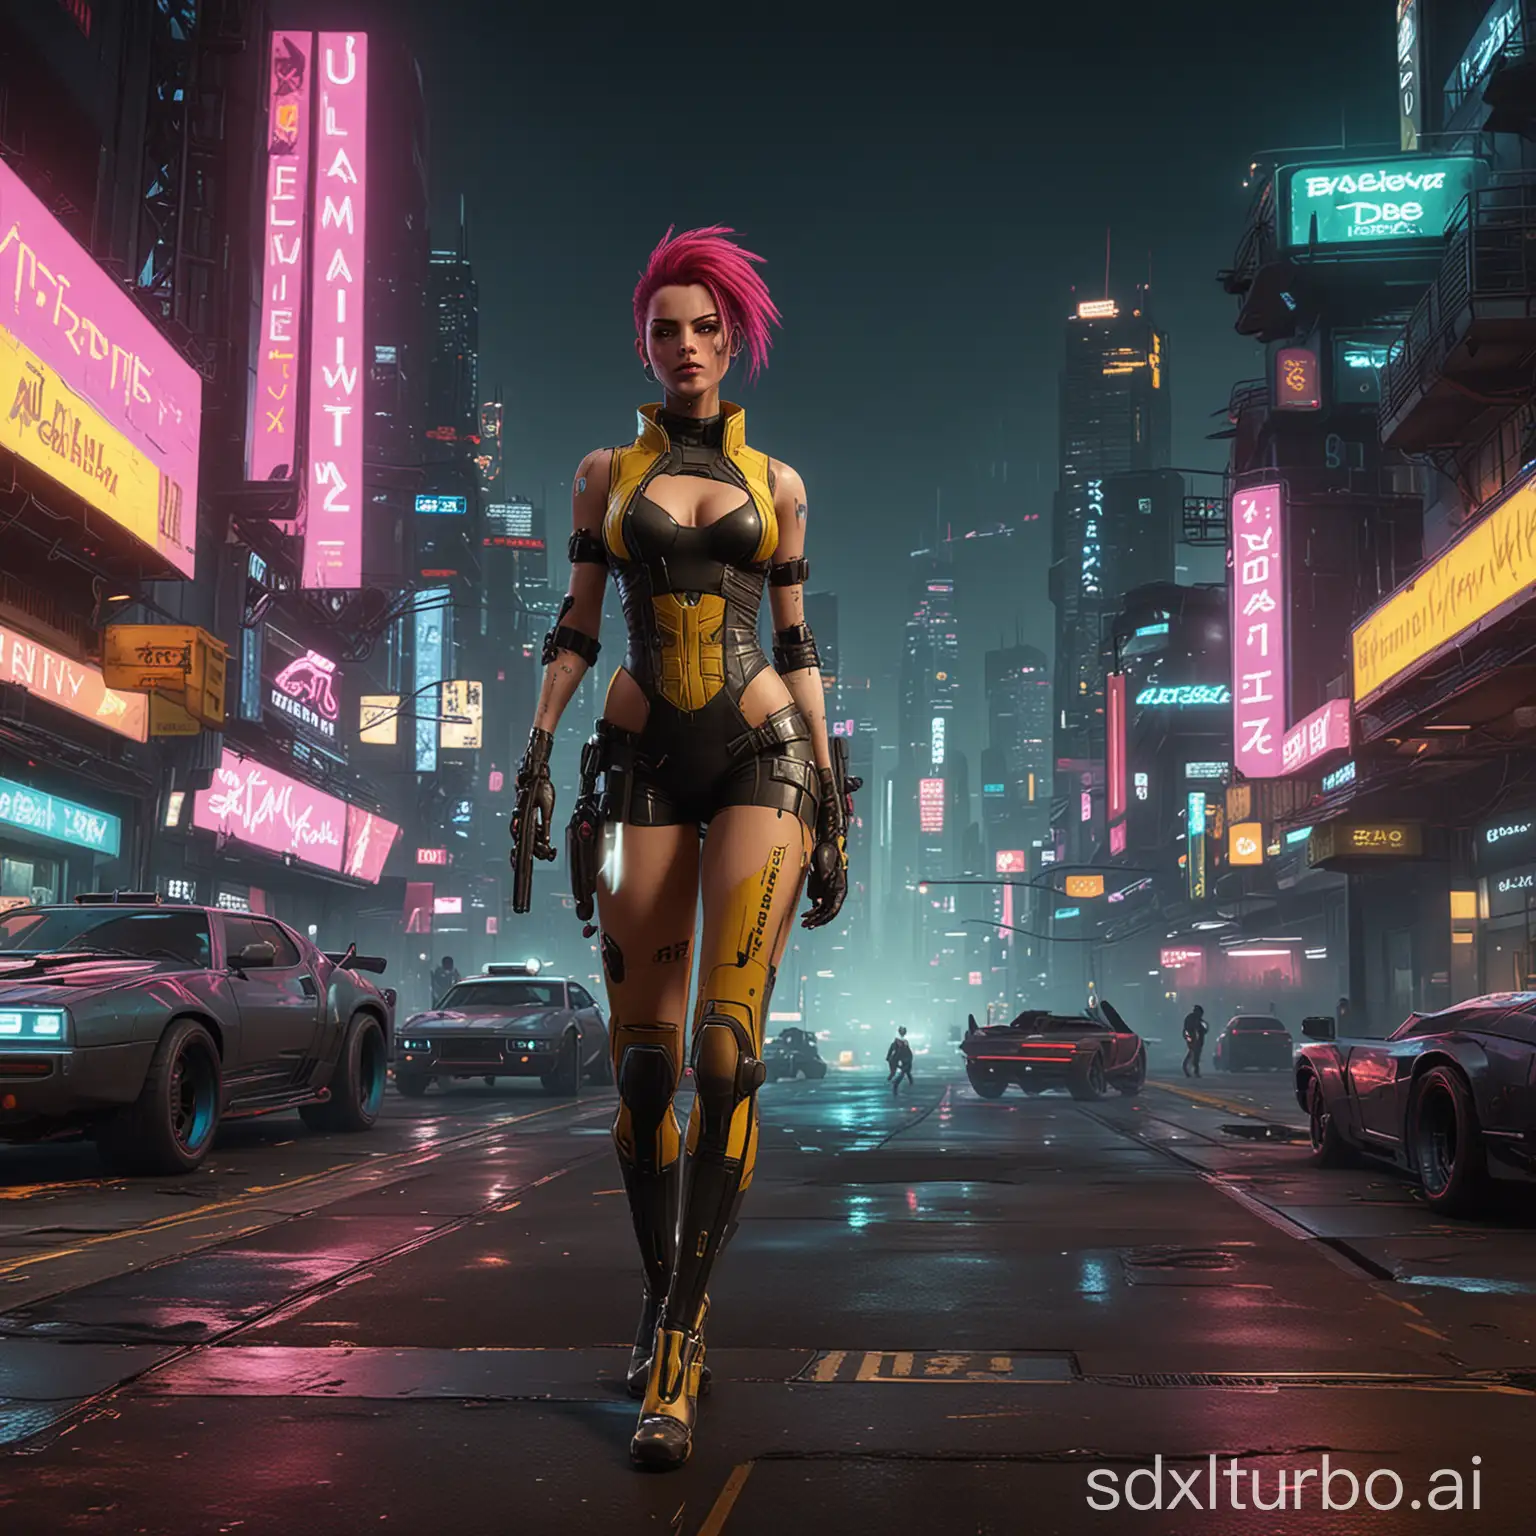 Futuristic-Cyberpunk-2077-Mods-Showcase-in-Neon-Night-Cityscape